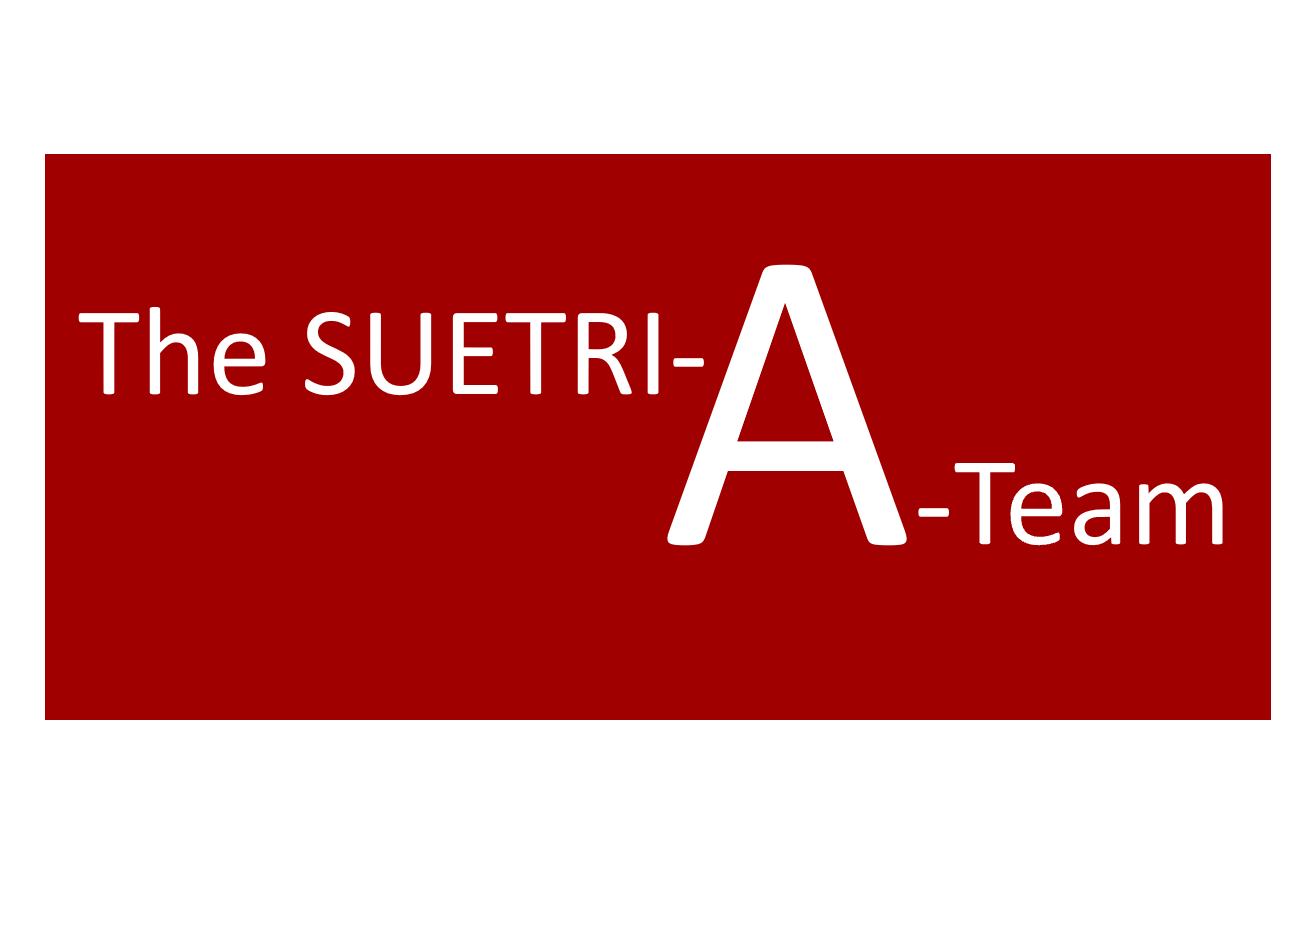 SUETRI-A